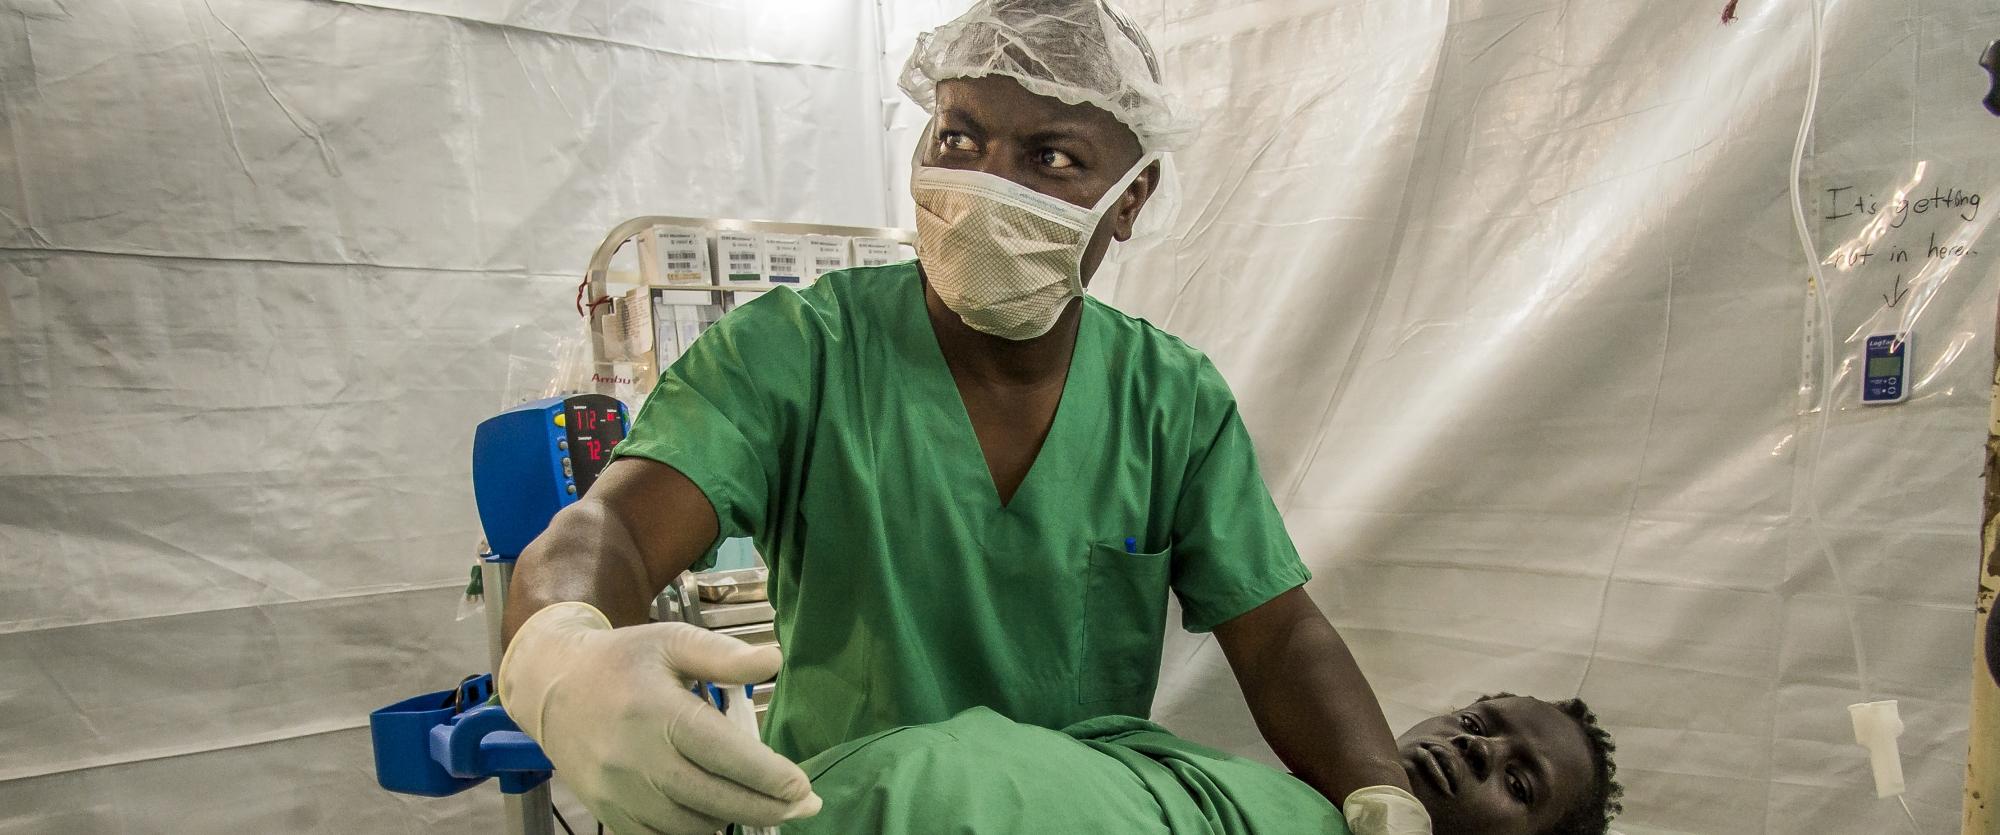 Opération à l’hôpital MSF d’Old Fangak, l'un des rares sites d'accès à la chirurgie pour les habitants de cette région du Soudan du Sud. Décembre 2017.